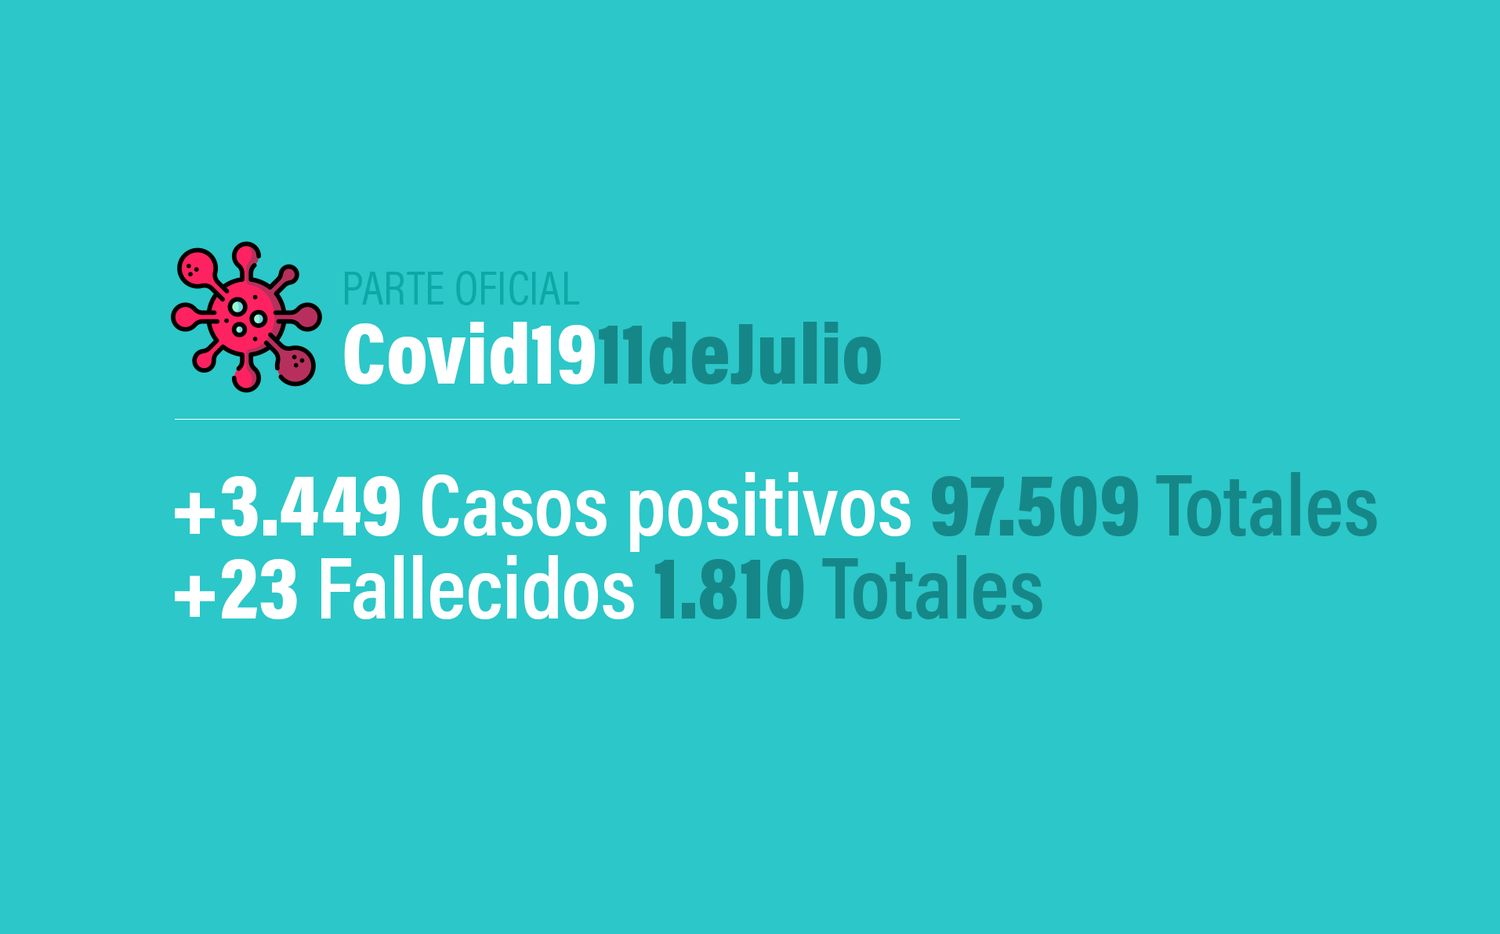 Coronavirus en Argentina: 3449 nuevos casos, 97509 confirmados y 1810 muertos, al 11 de julio